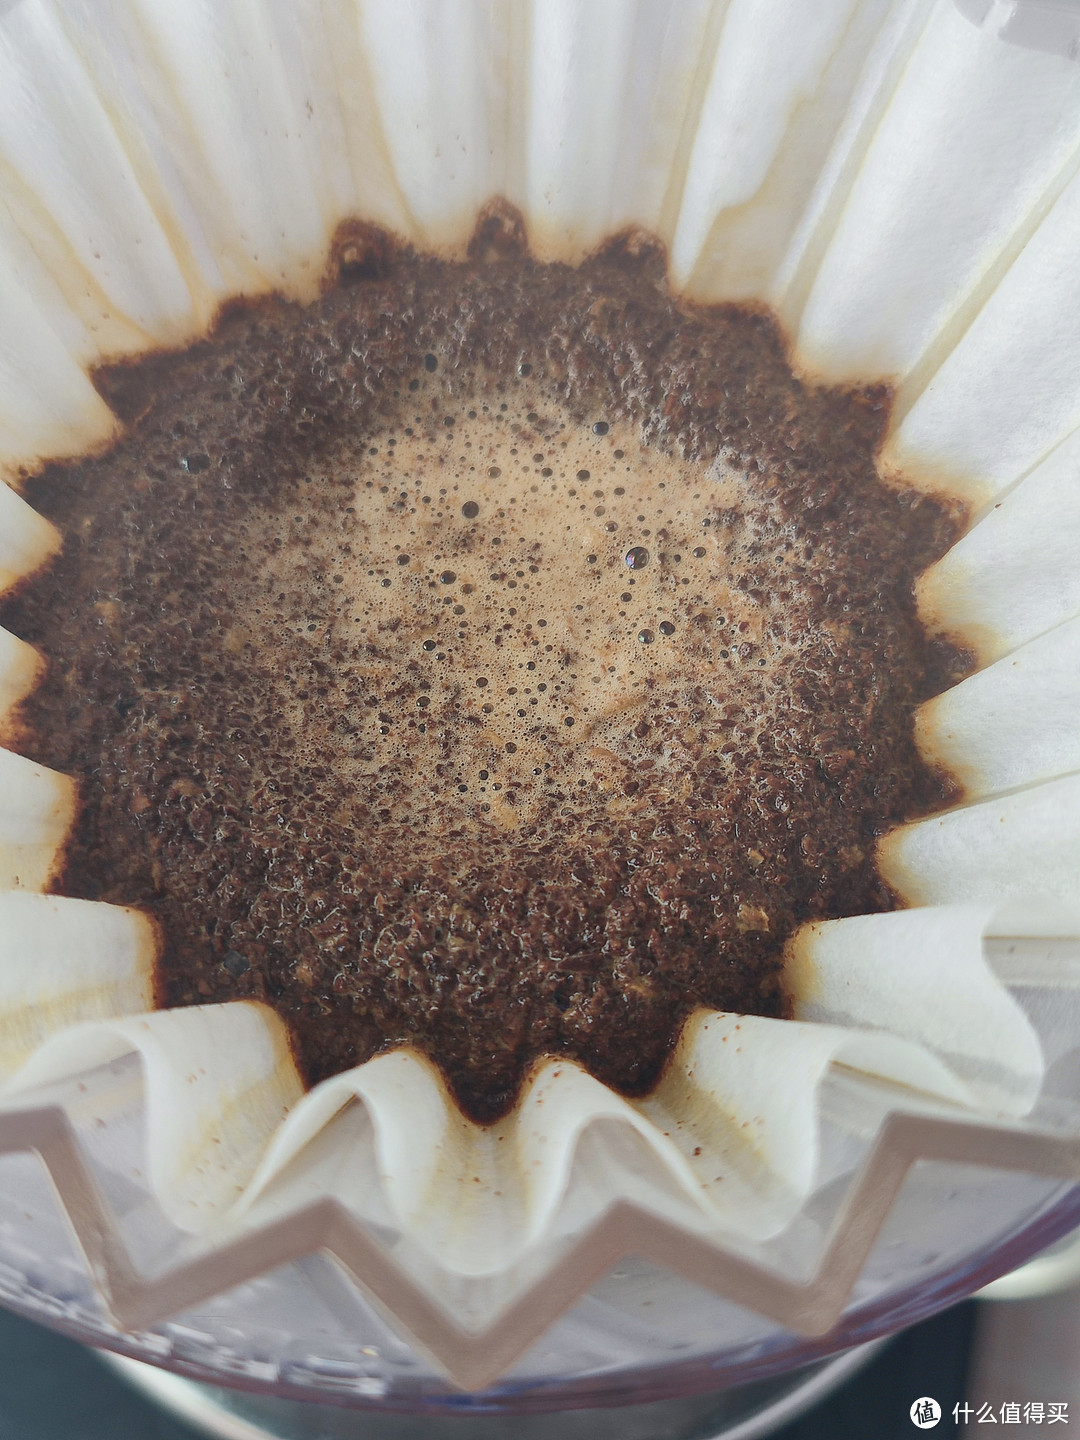 世界咖啡地图之肯尼亚，一个不输埃塞的咖啡产地。分享双十一购入的两款肯尼亚咖啡：澳帝焙和豆叔。